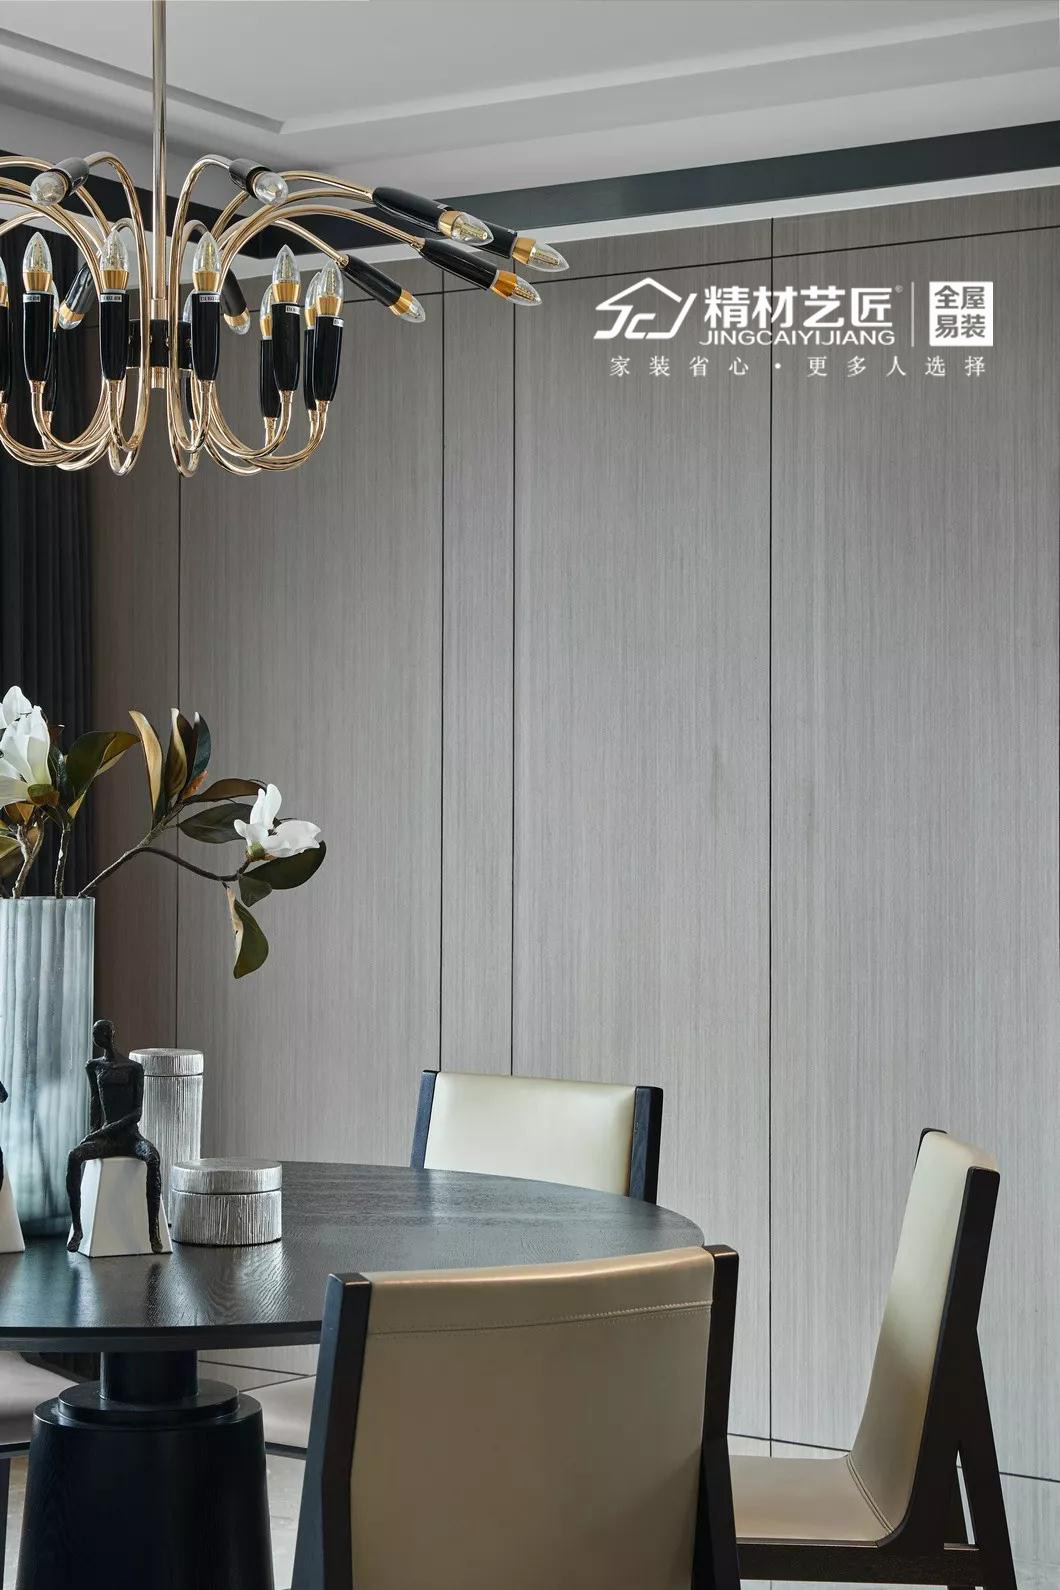 极简之美|中国板材十大品牌精材艺匠护墙板效果一览_太平洋家居网